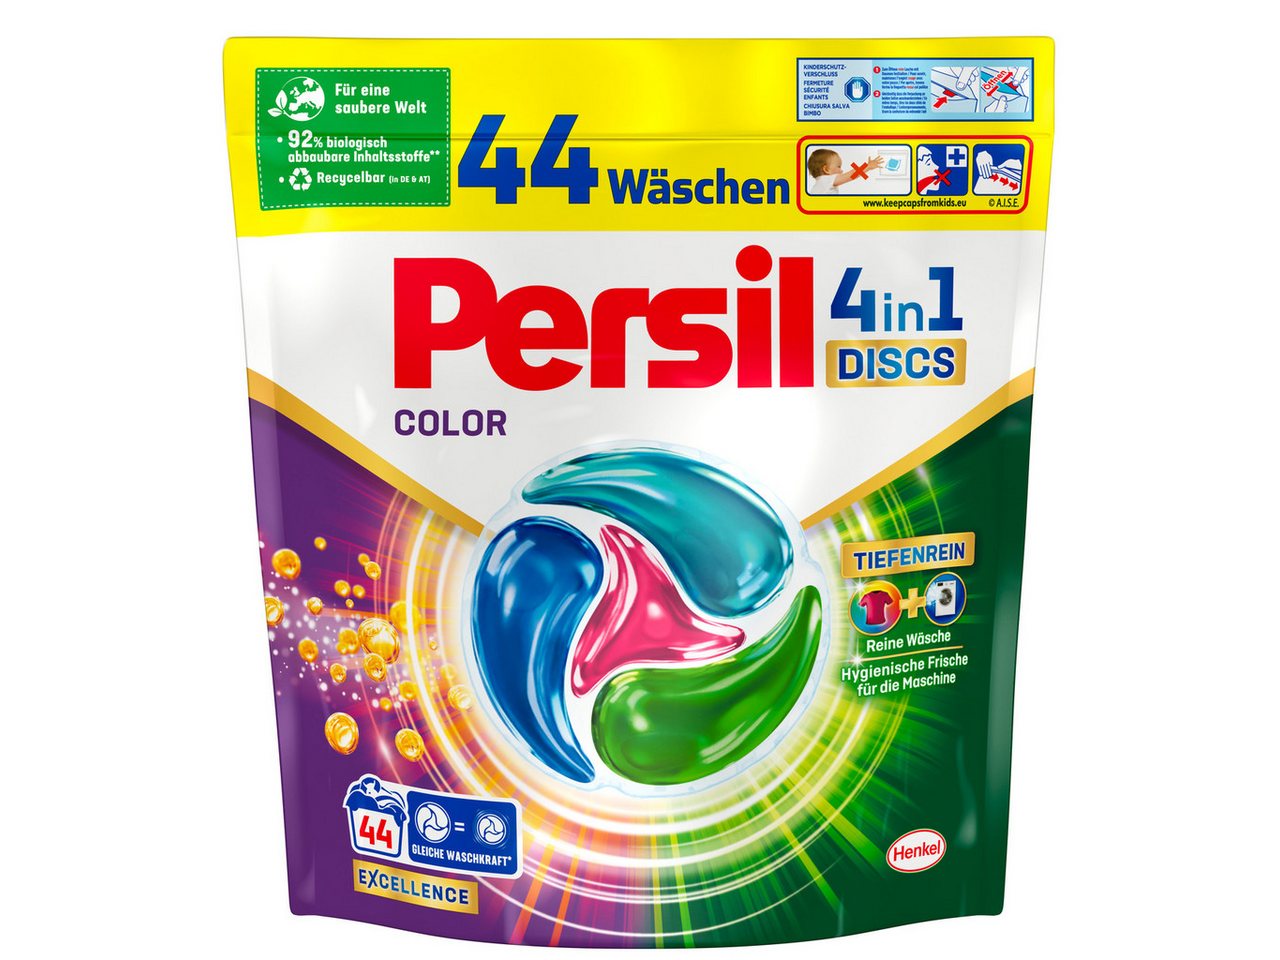 Persil Color 4-in-1 Discs 44 WL Colorwaschmittel (44-St. 748g mit Tiefenrein Technologie) von Persil